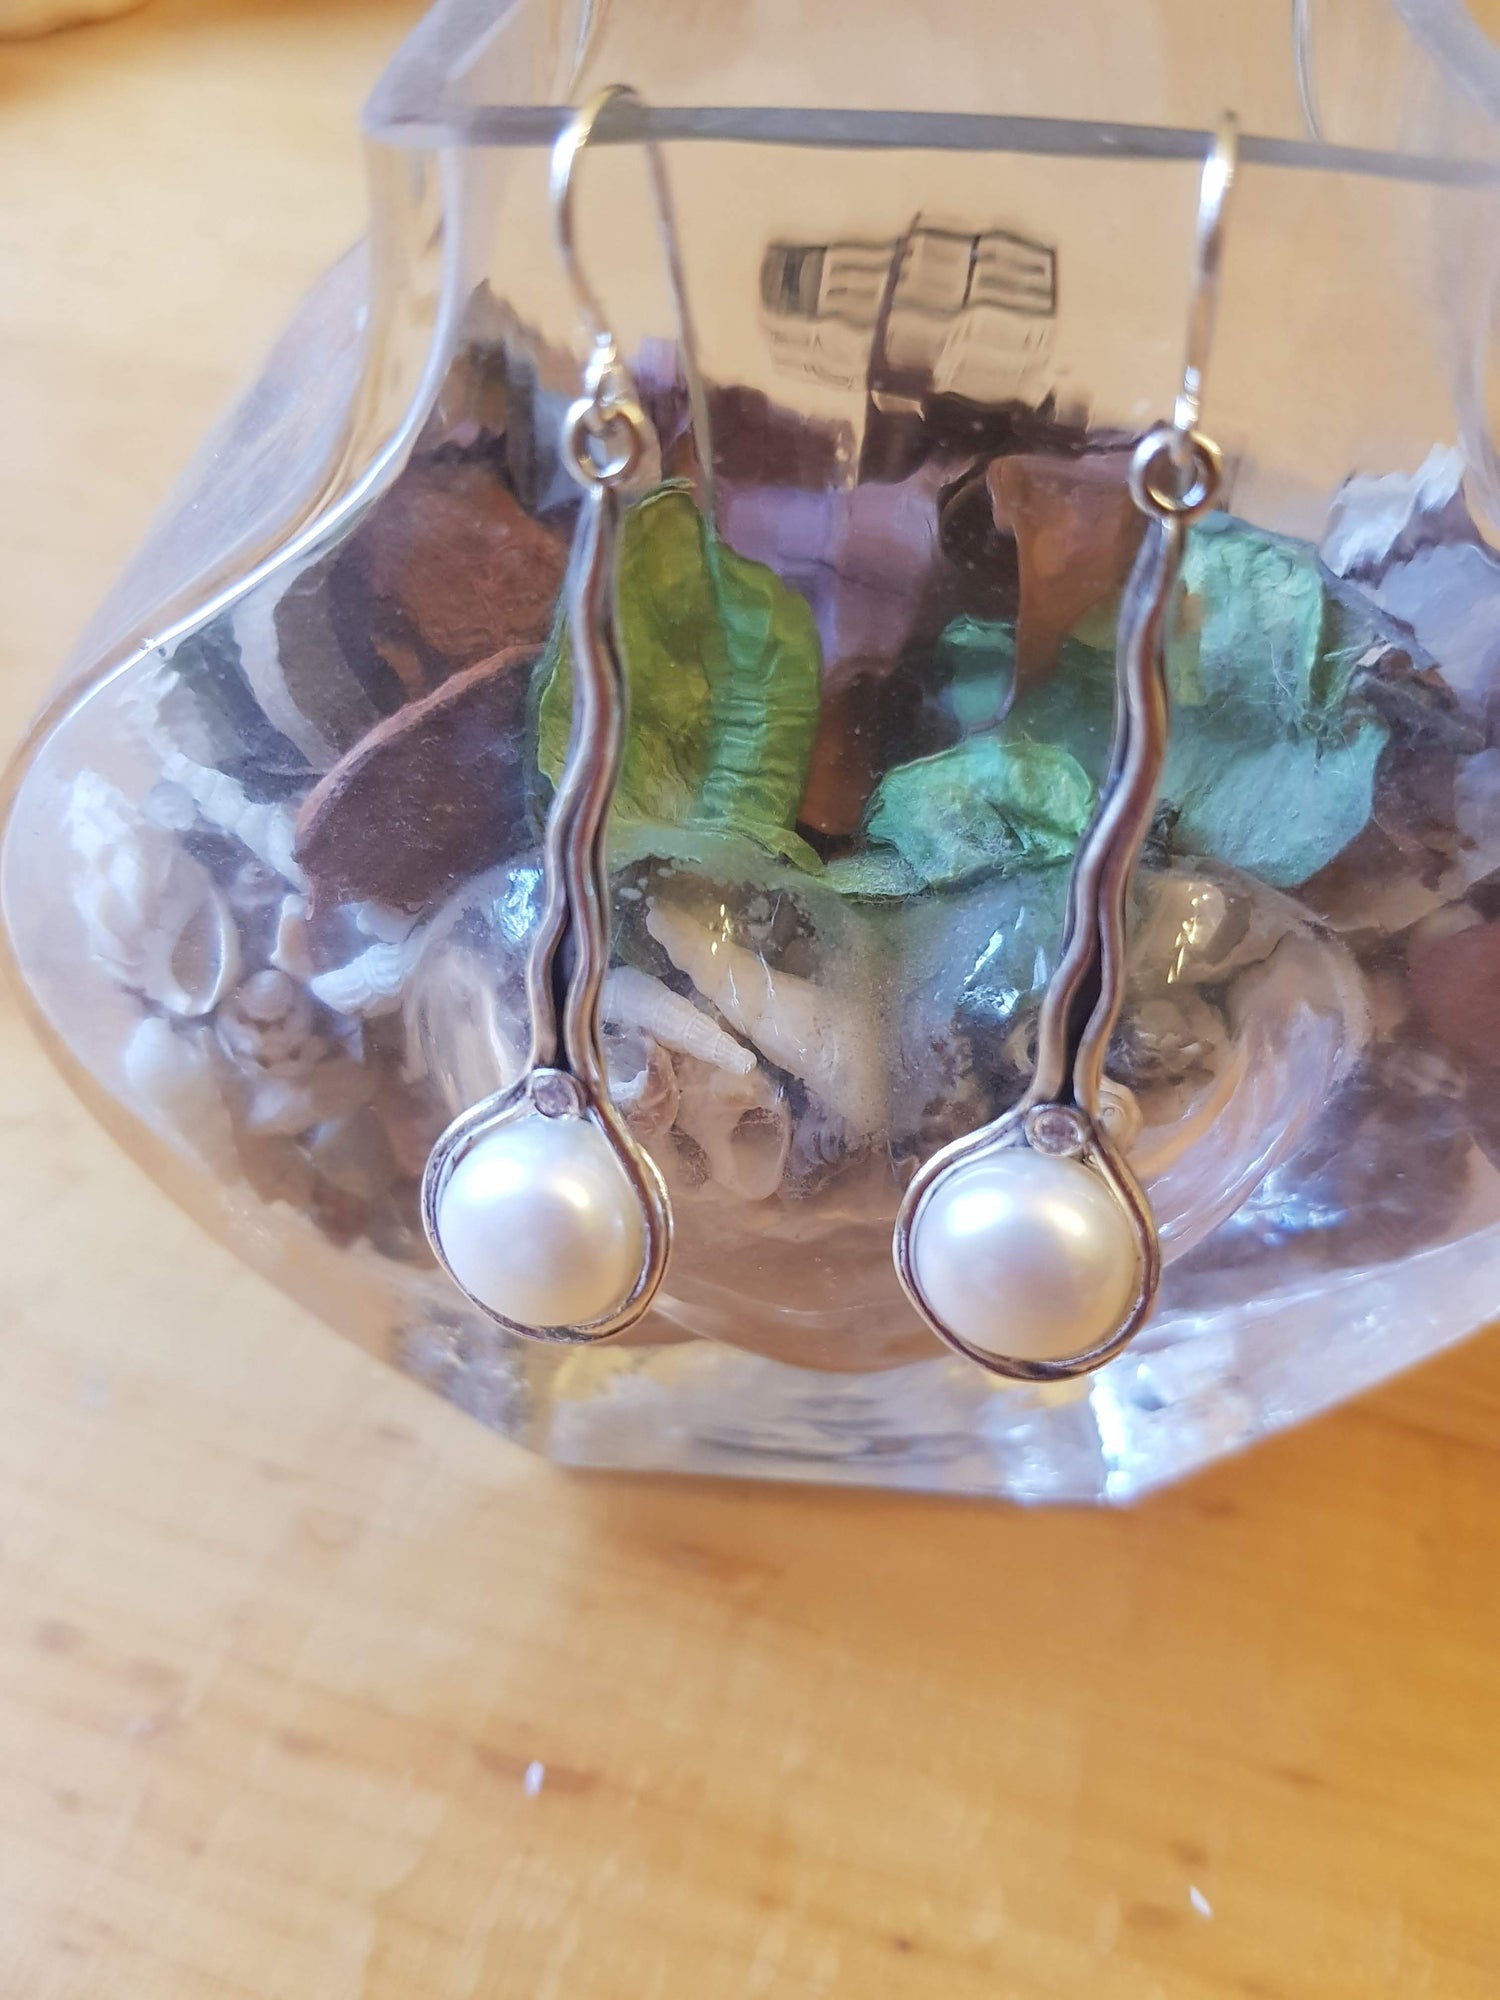 Bluenoemi Jewelry Earrings white Pearl Earrings , Sterling silver earrings, dangling earrings, elegant earrings , silver jewelry